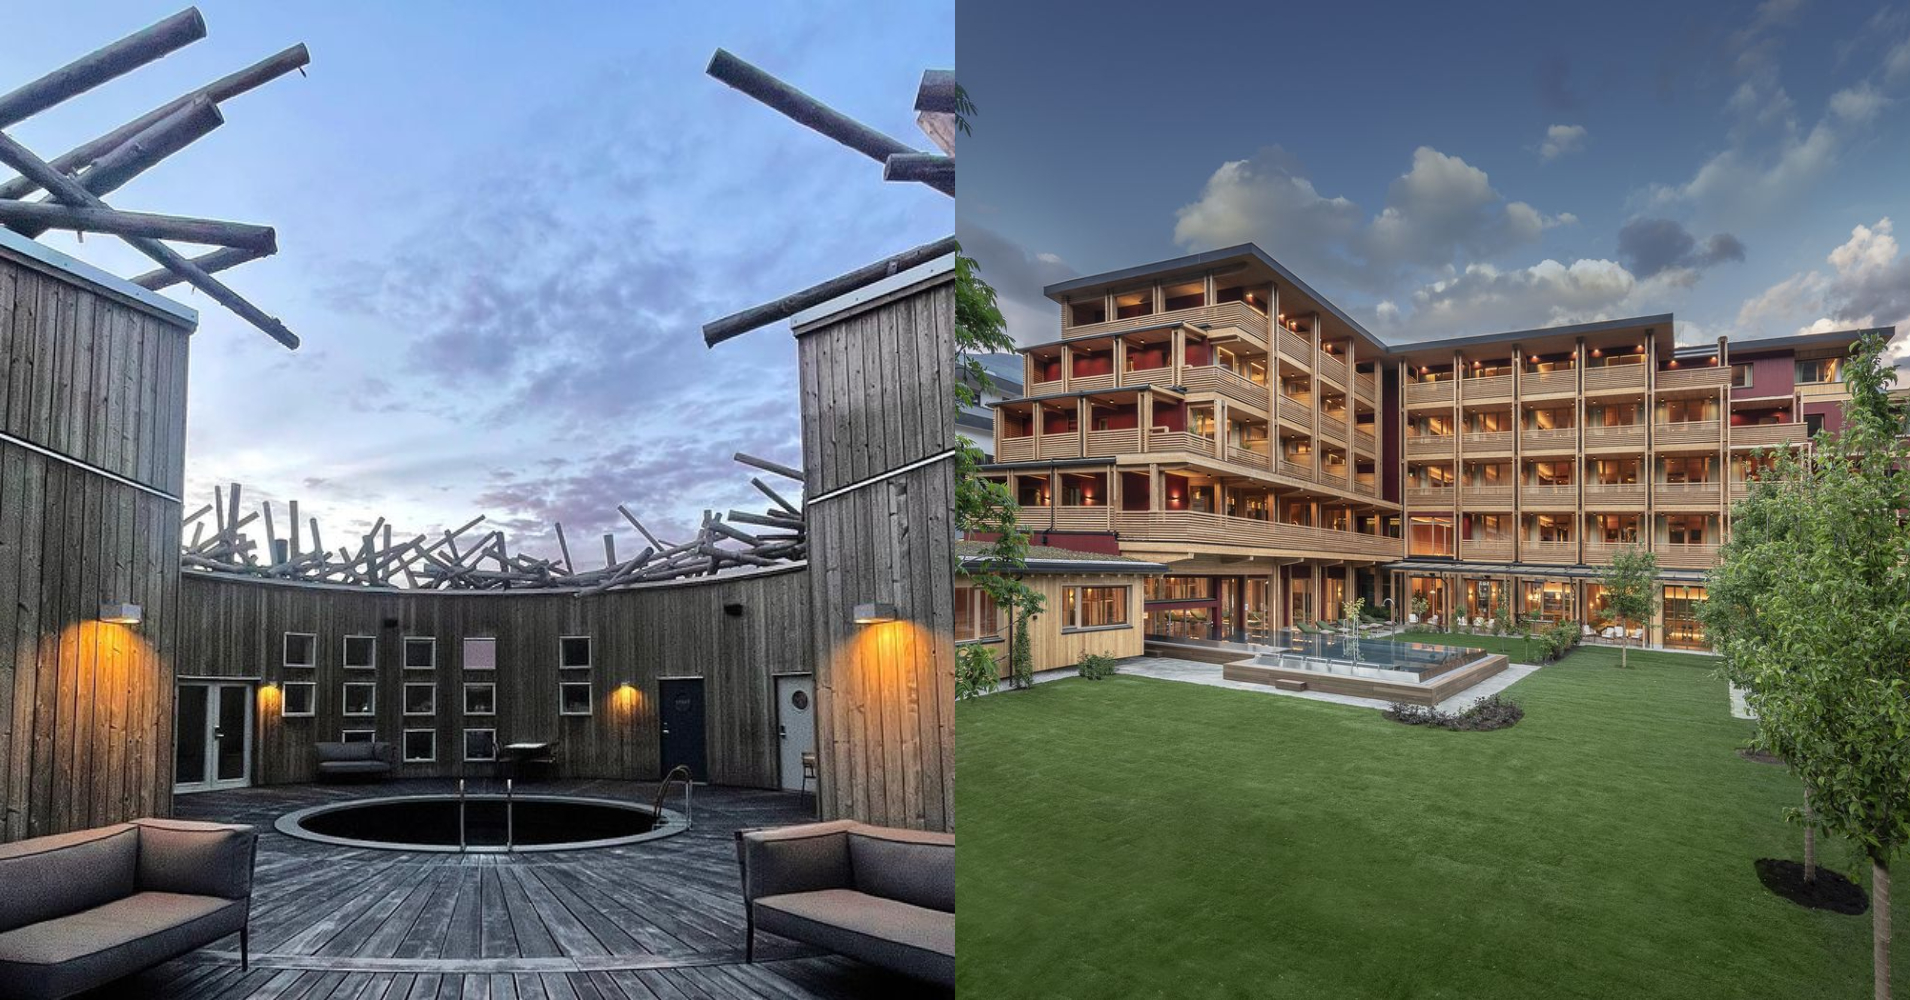 【#Good Design】漂浮北歐淨土之上的木造建築、太陽能加熱游泳池；盤點友善自然、永續發展的綠色水療酒店